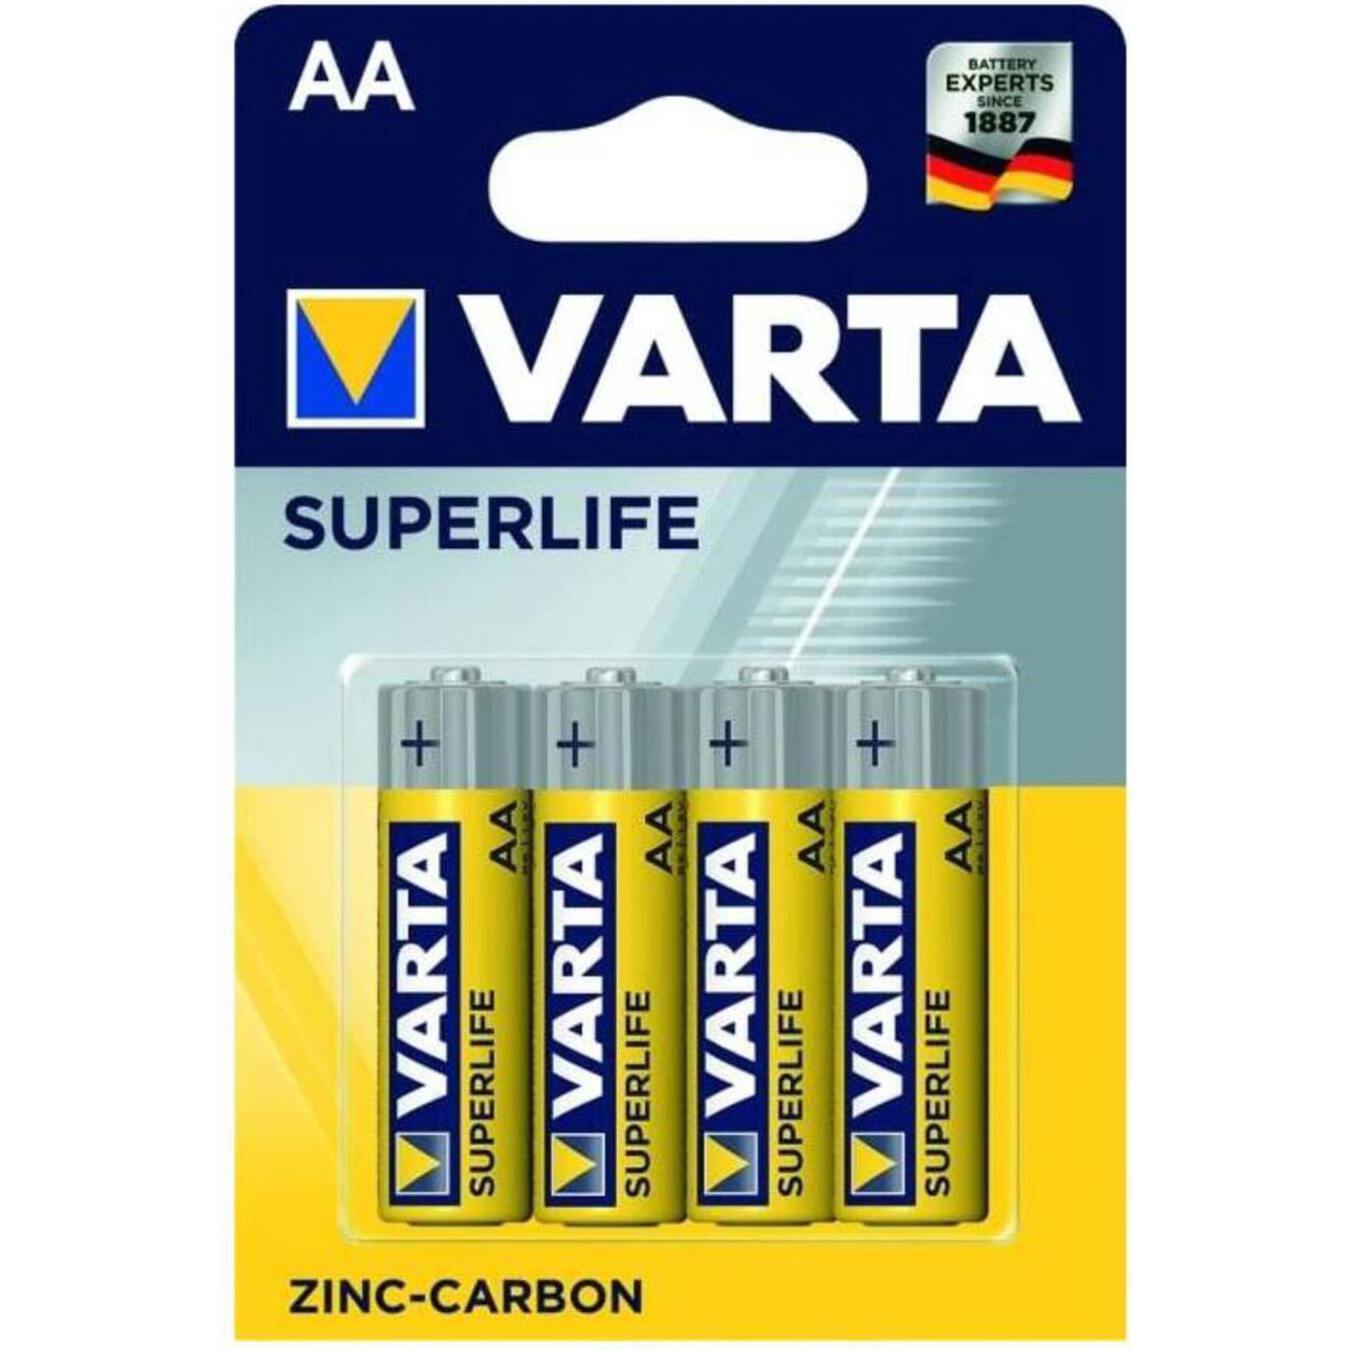 Varta Superlife AA BLI4 battery 2